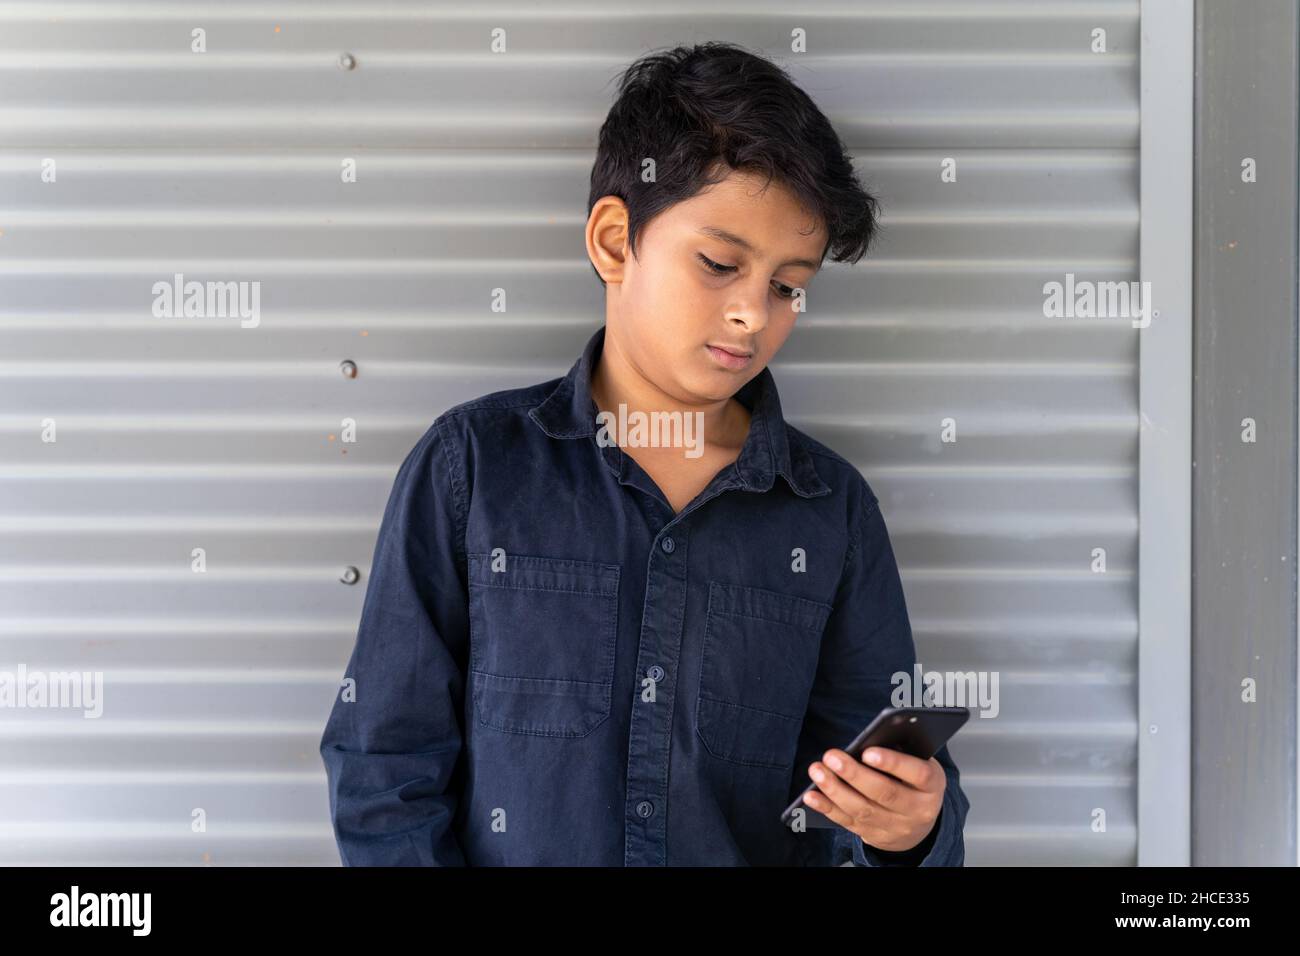 Kleiner Junge, der mit dem Mobiltelefon beschäftigt ist. Konzept eines jungen Kindes, das Social Media auf seinem Handy nutzt. Stockfoto